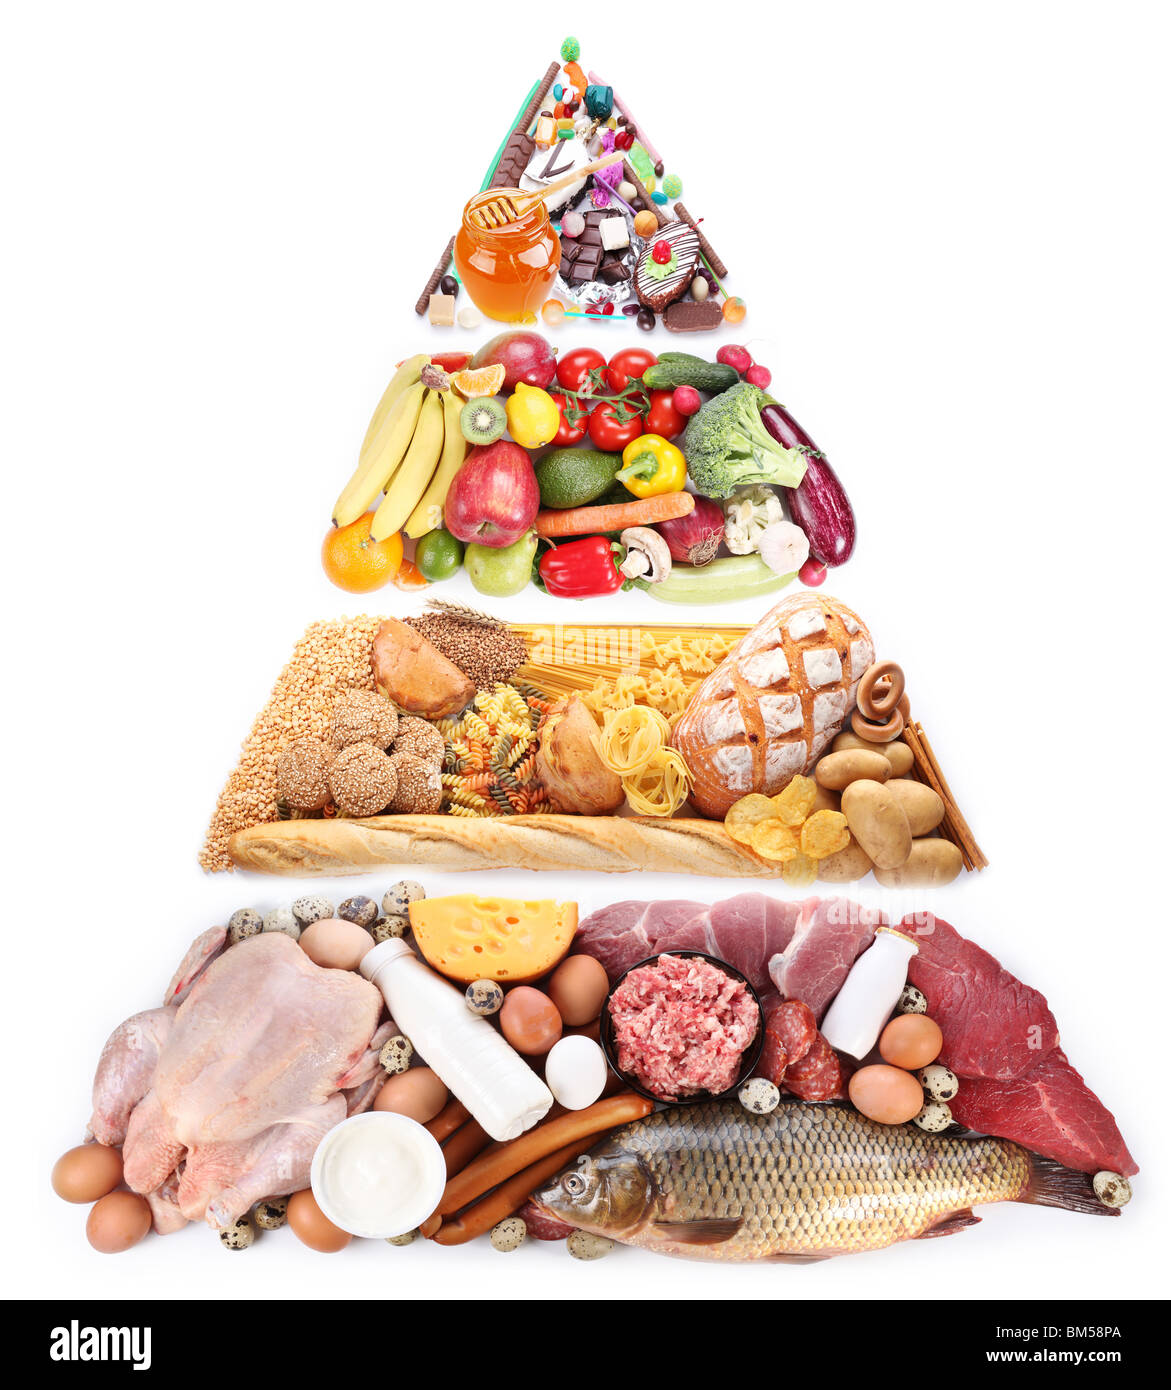 La piramide alimentare per una dieta equilibrata. Isolato su bianco Foto Stock